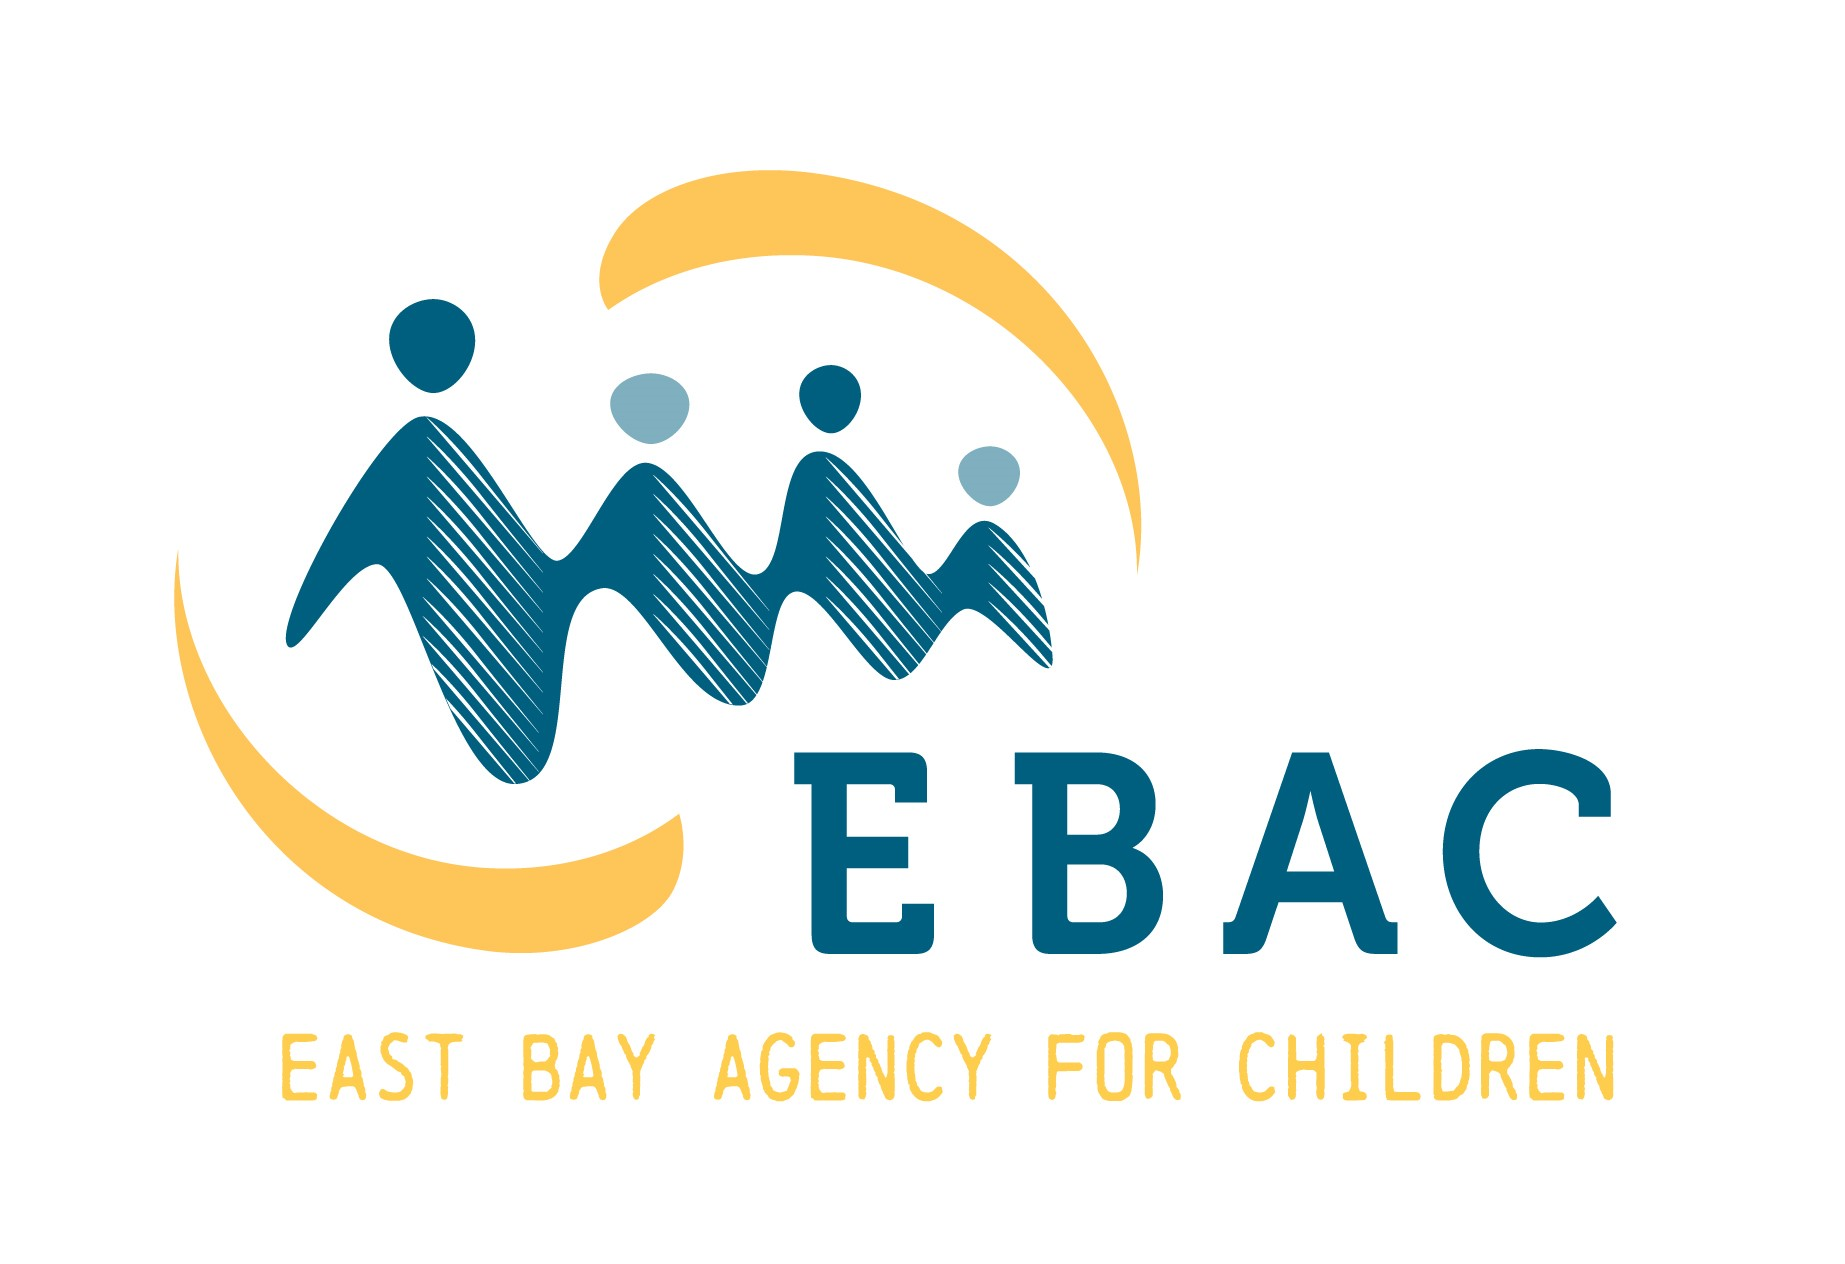 East Bay Agency for Children logo